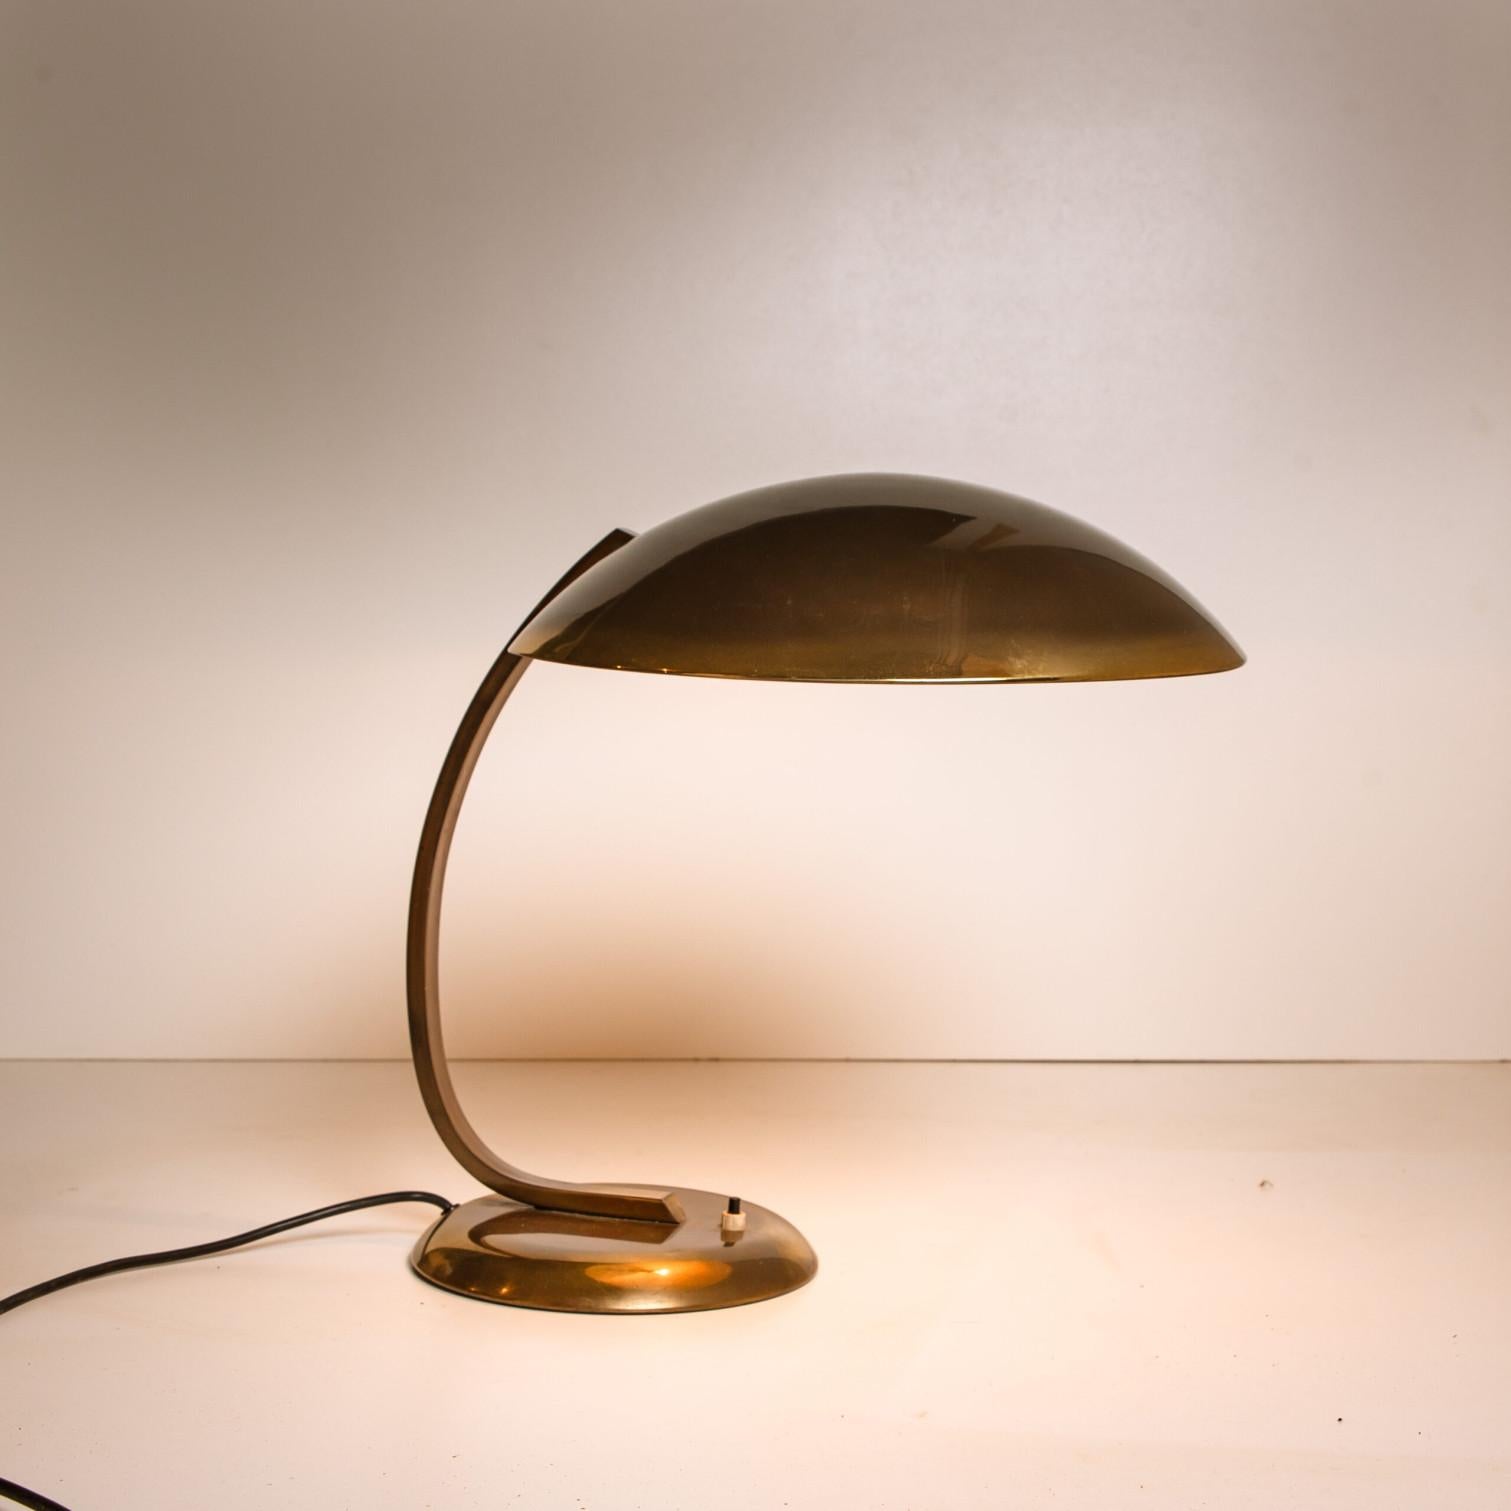 Other Christian Dell for Kaiser Idell / Kaiser Leuchten Brass Desk or Table Lamp, Art  For Sale